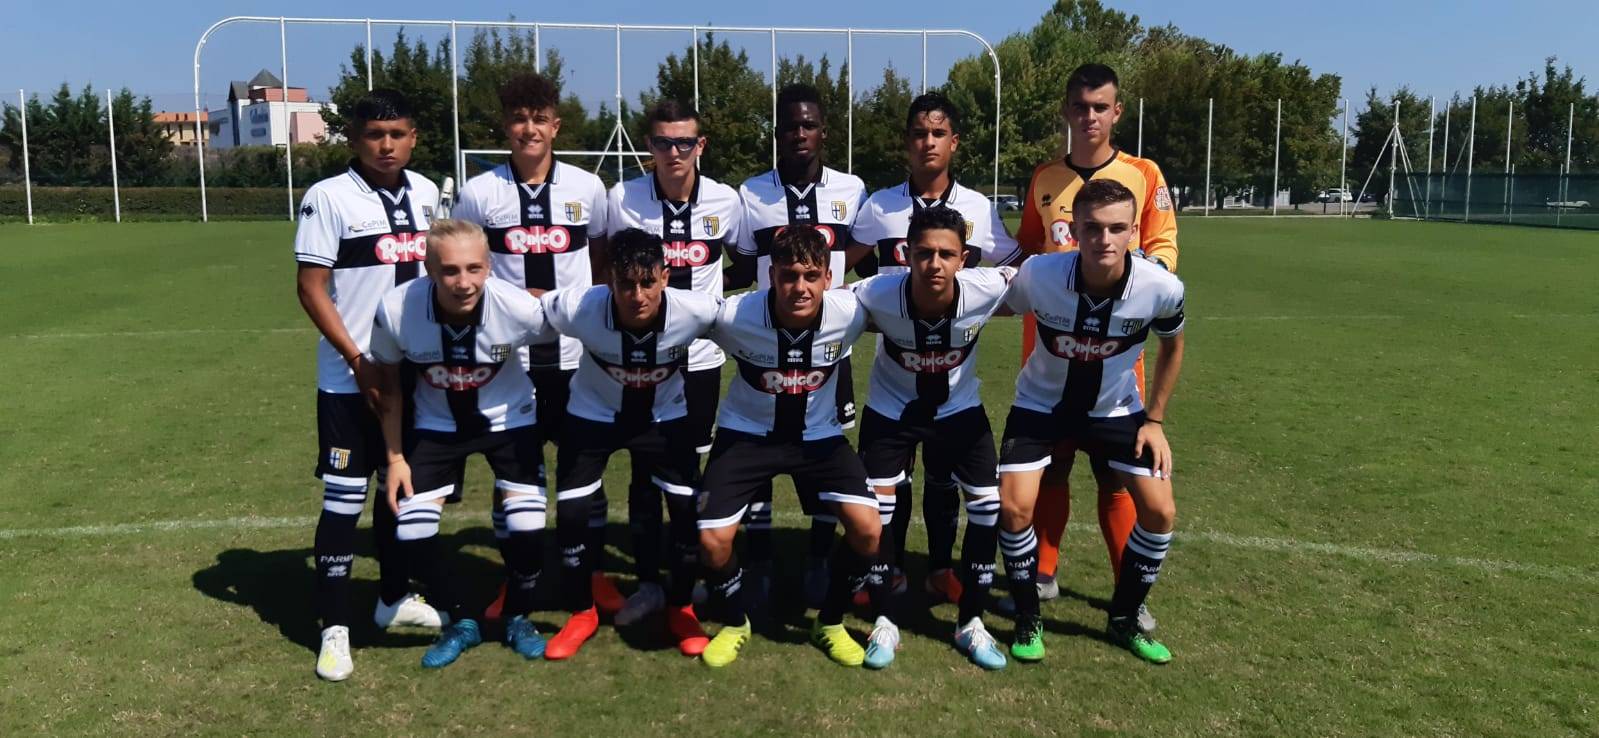 Under 16 Parma Alessandria 18 08 2019